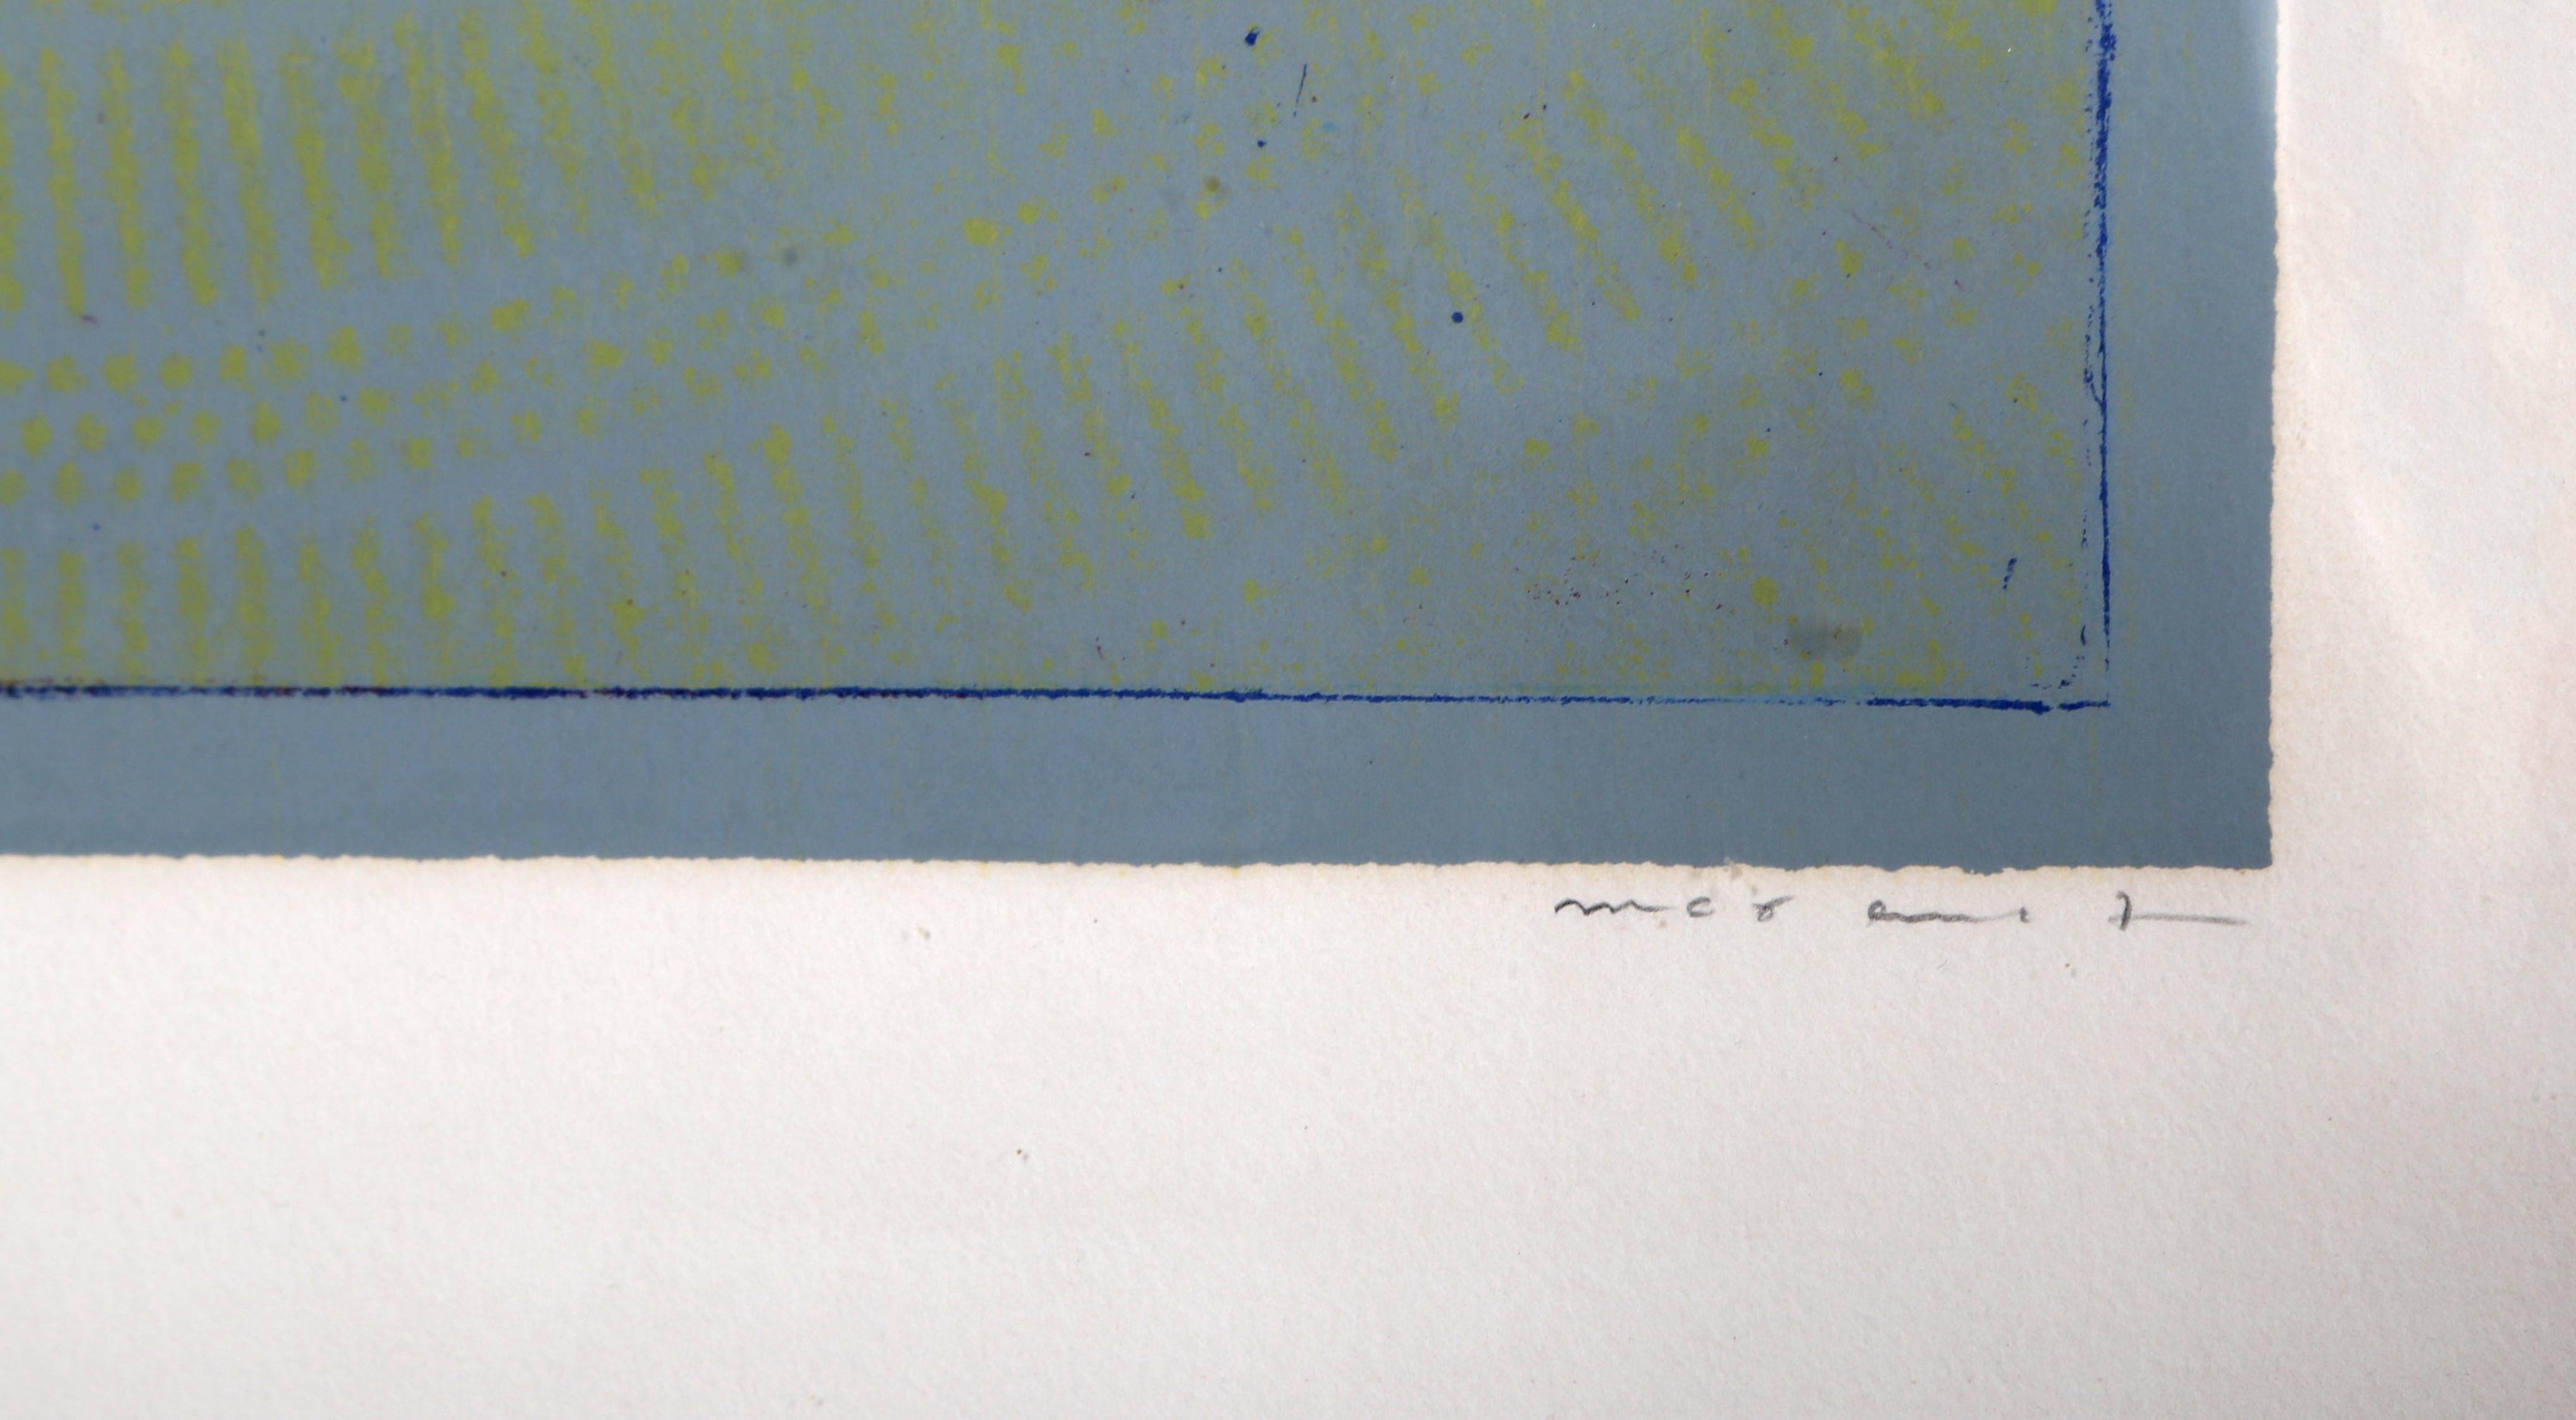 Artistics : Max Ernst, Allemand (1891 - 1976)
Titre : Singe poursuivi par un éléphant pour un vol de chapeau
Année : 1974
Médium : Lithographie, signée et numérotée au crayon
Edition : 78/99
Taille de l'image : 22.5 x 18 pouces
Taille : 76,2 x 55,88